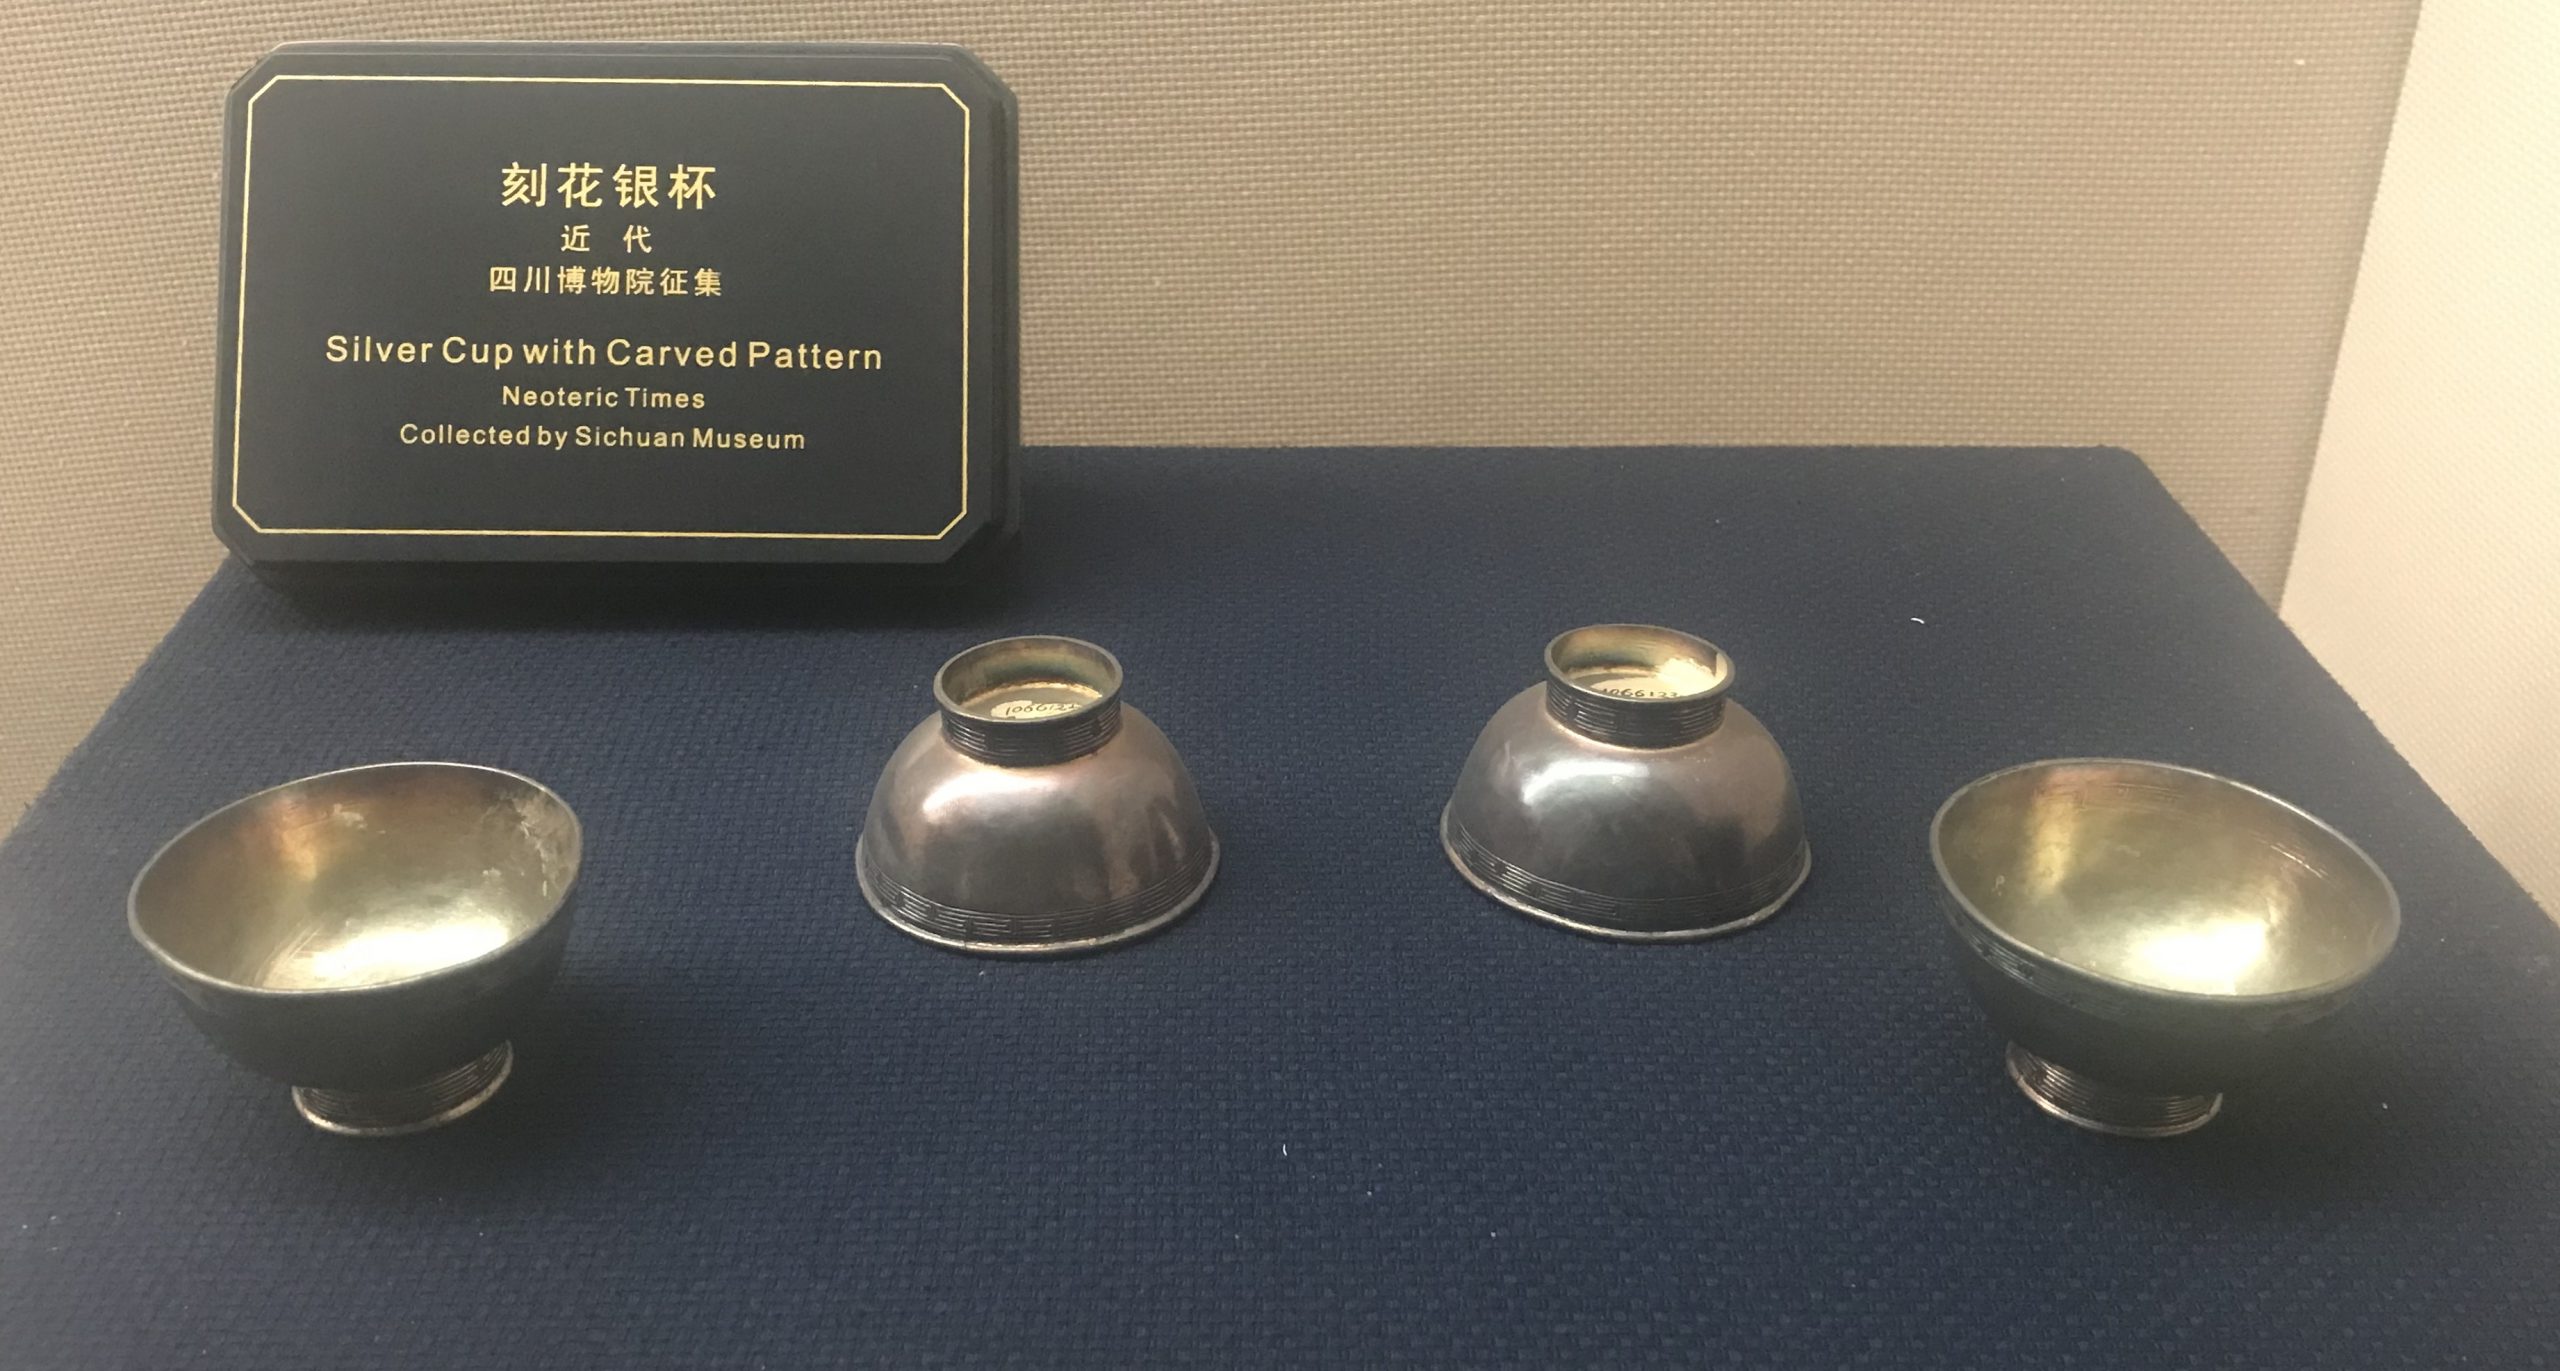 刻花銀杯-チャン族生活用品-四川民族文物館-四川博物館-成都